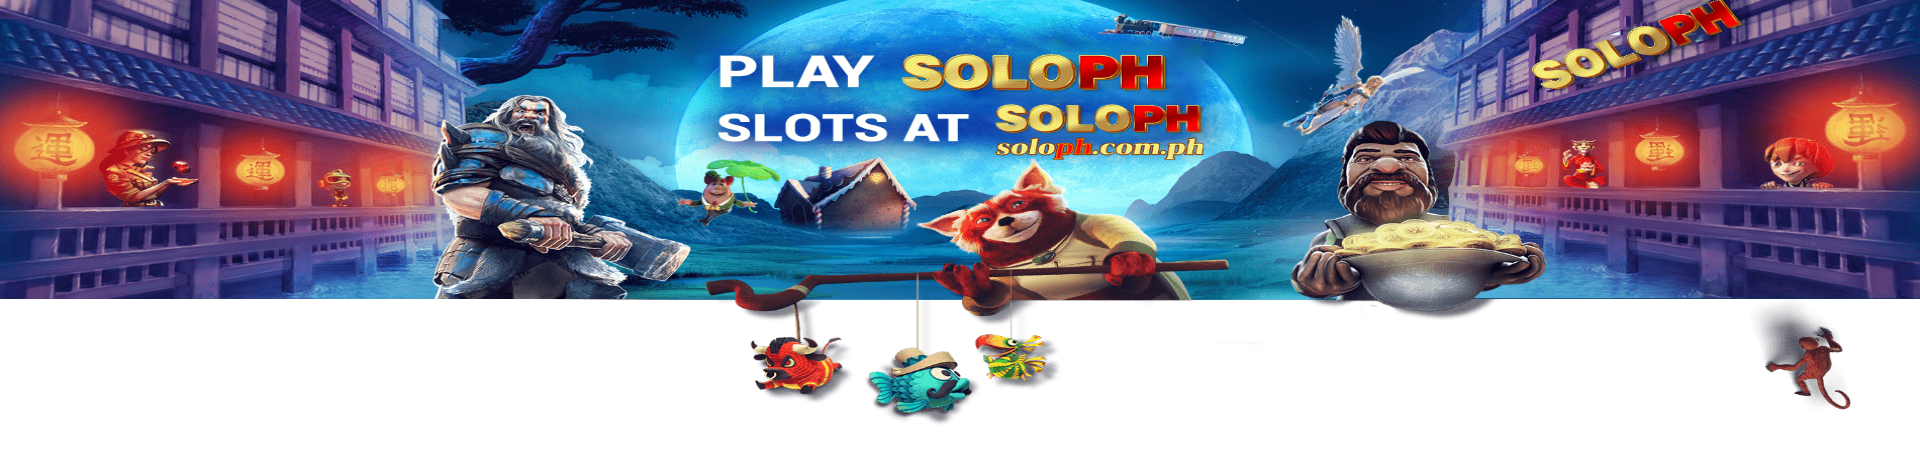 slot soloph banner